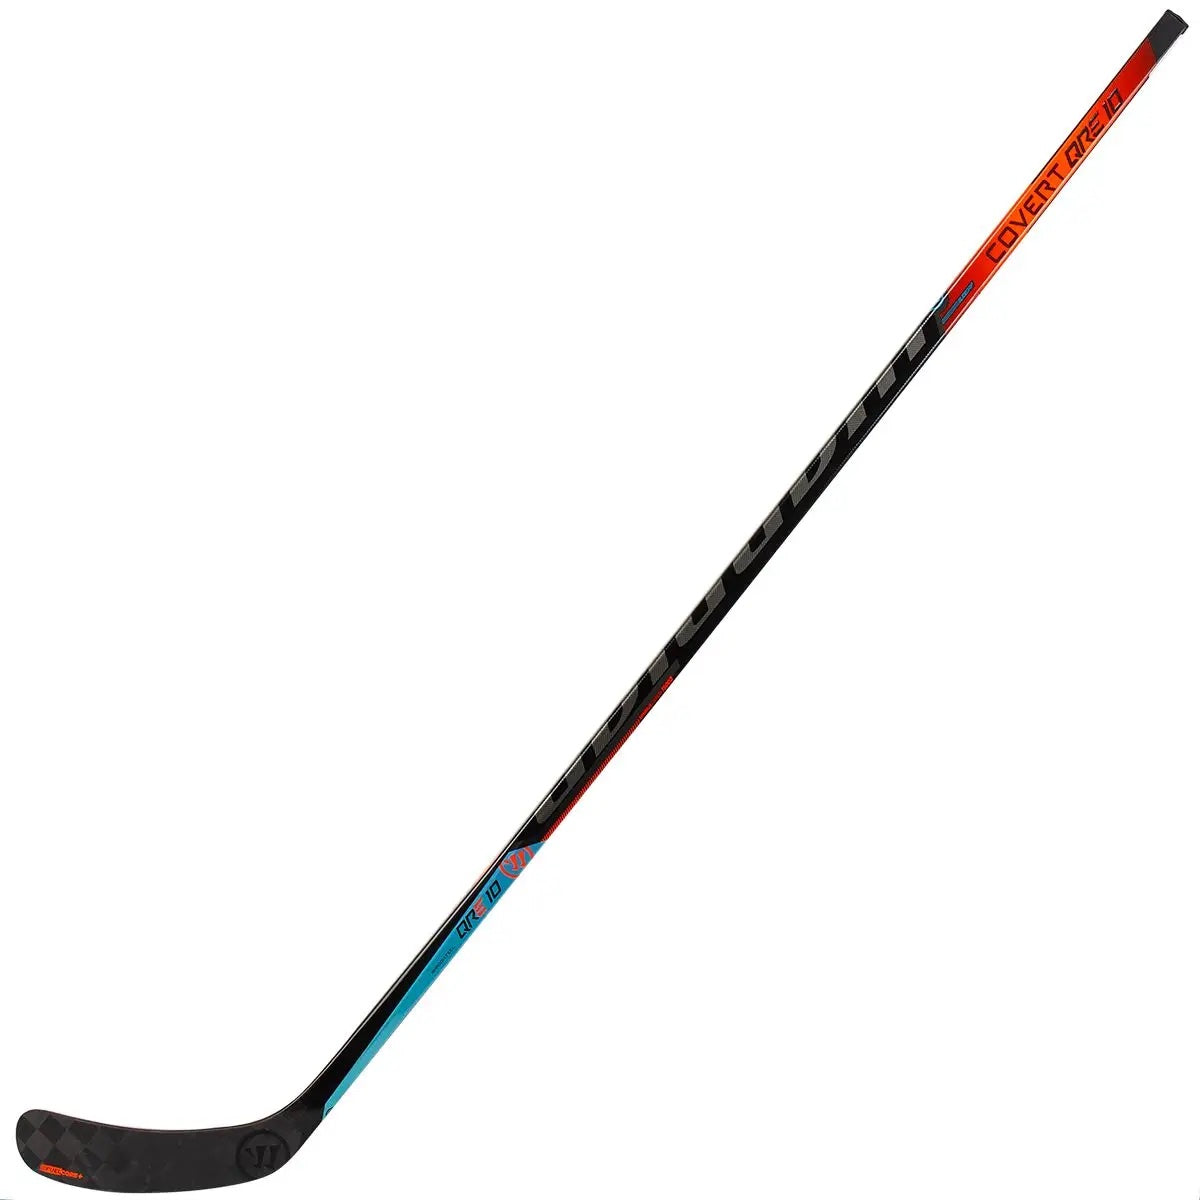 Warrior Covert QRE 10 Hockey Stick - Senior